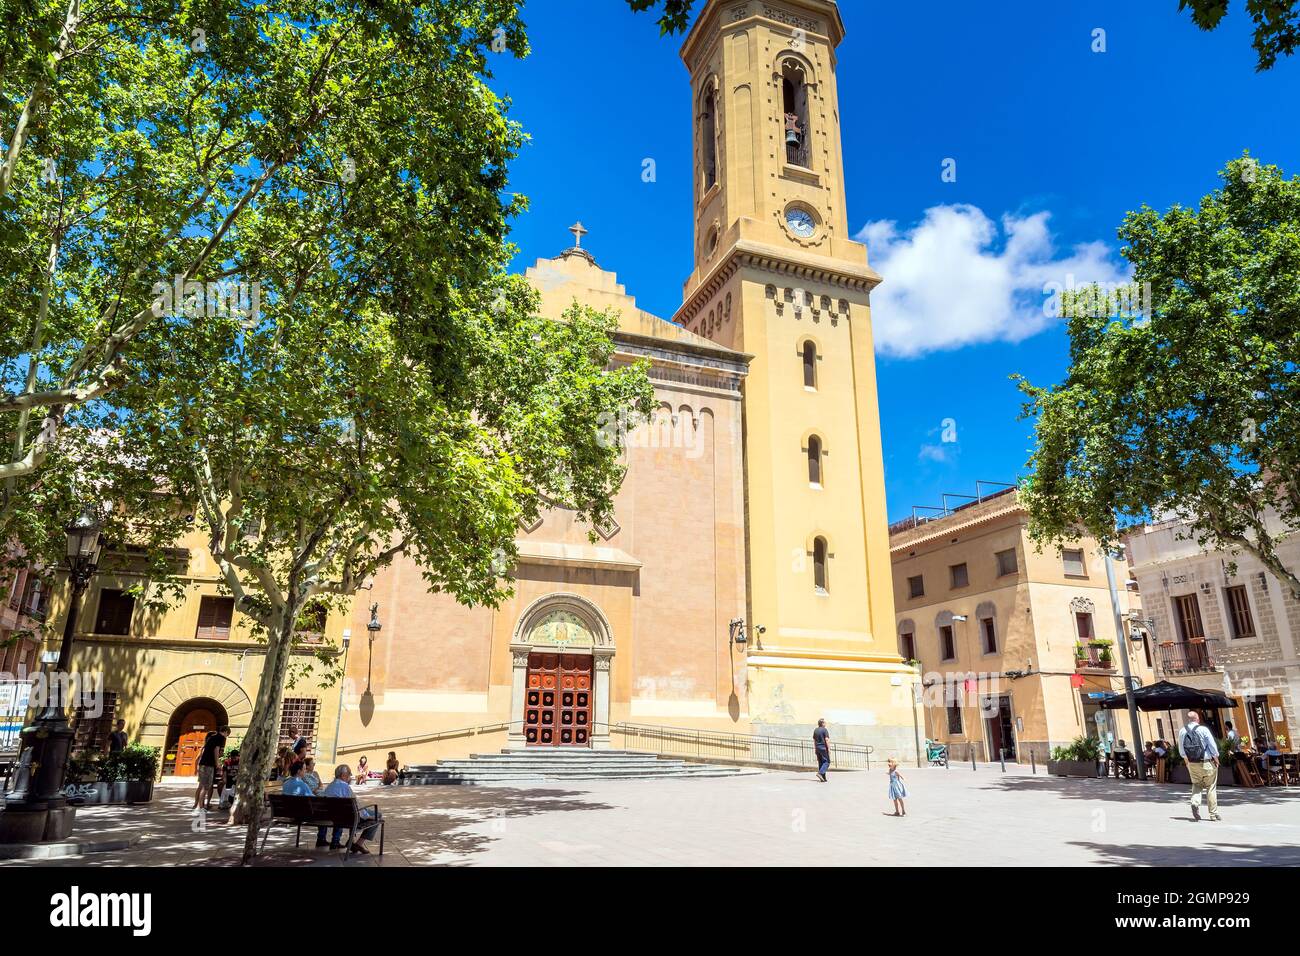 Barcelona, Spanien - 7. Juli 2017: Tagesansicht von Plaça de la Concòrdia und Església de Santa Maria del Remei mit Einheimischen auf Bänken in Barcelona, Spanien. Stockfoto